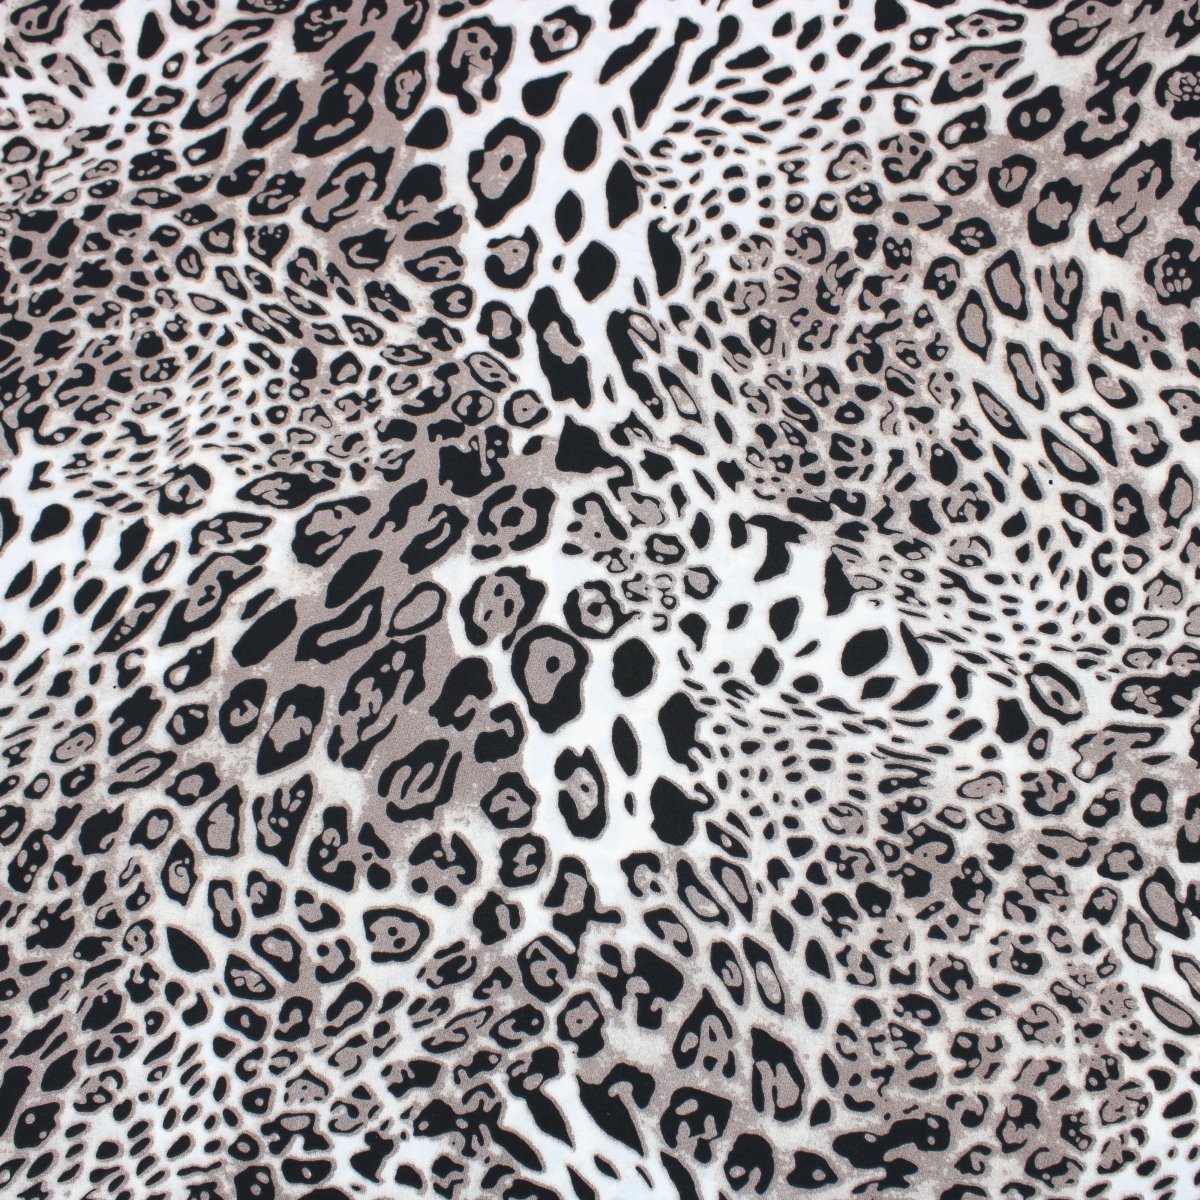 3 Metres Dressmaking Cheetah Print Crepe Georgette- 55" Wide Dusky Brown & Black - Pound A Metre